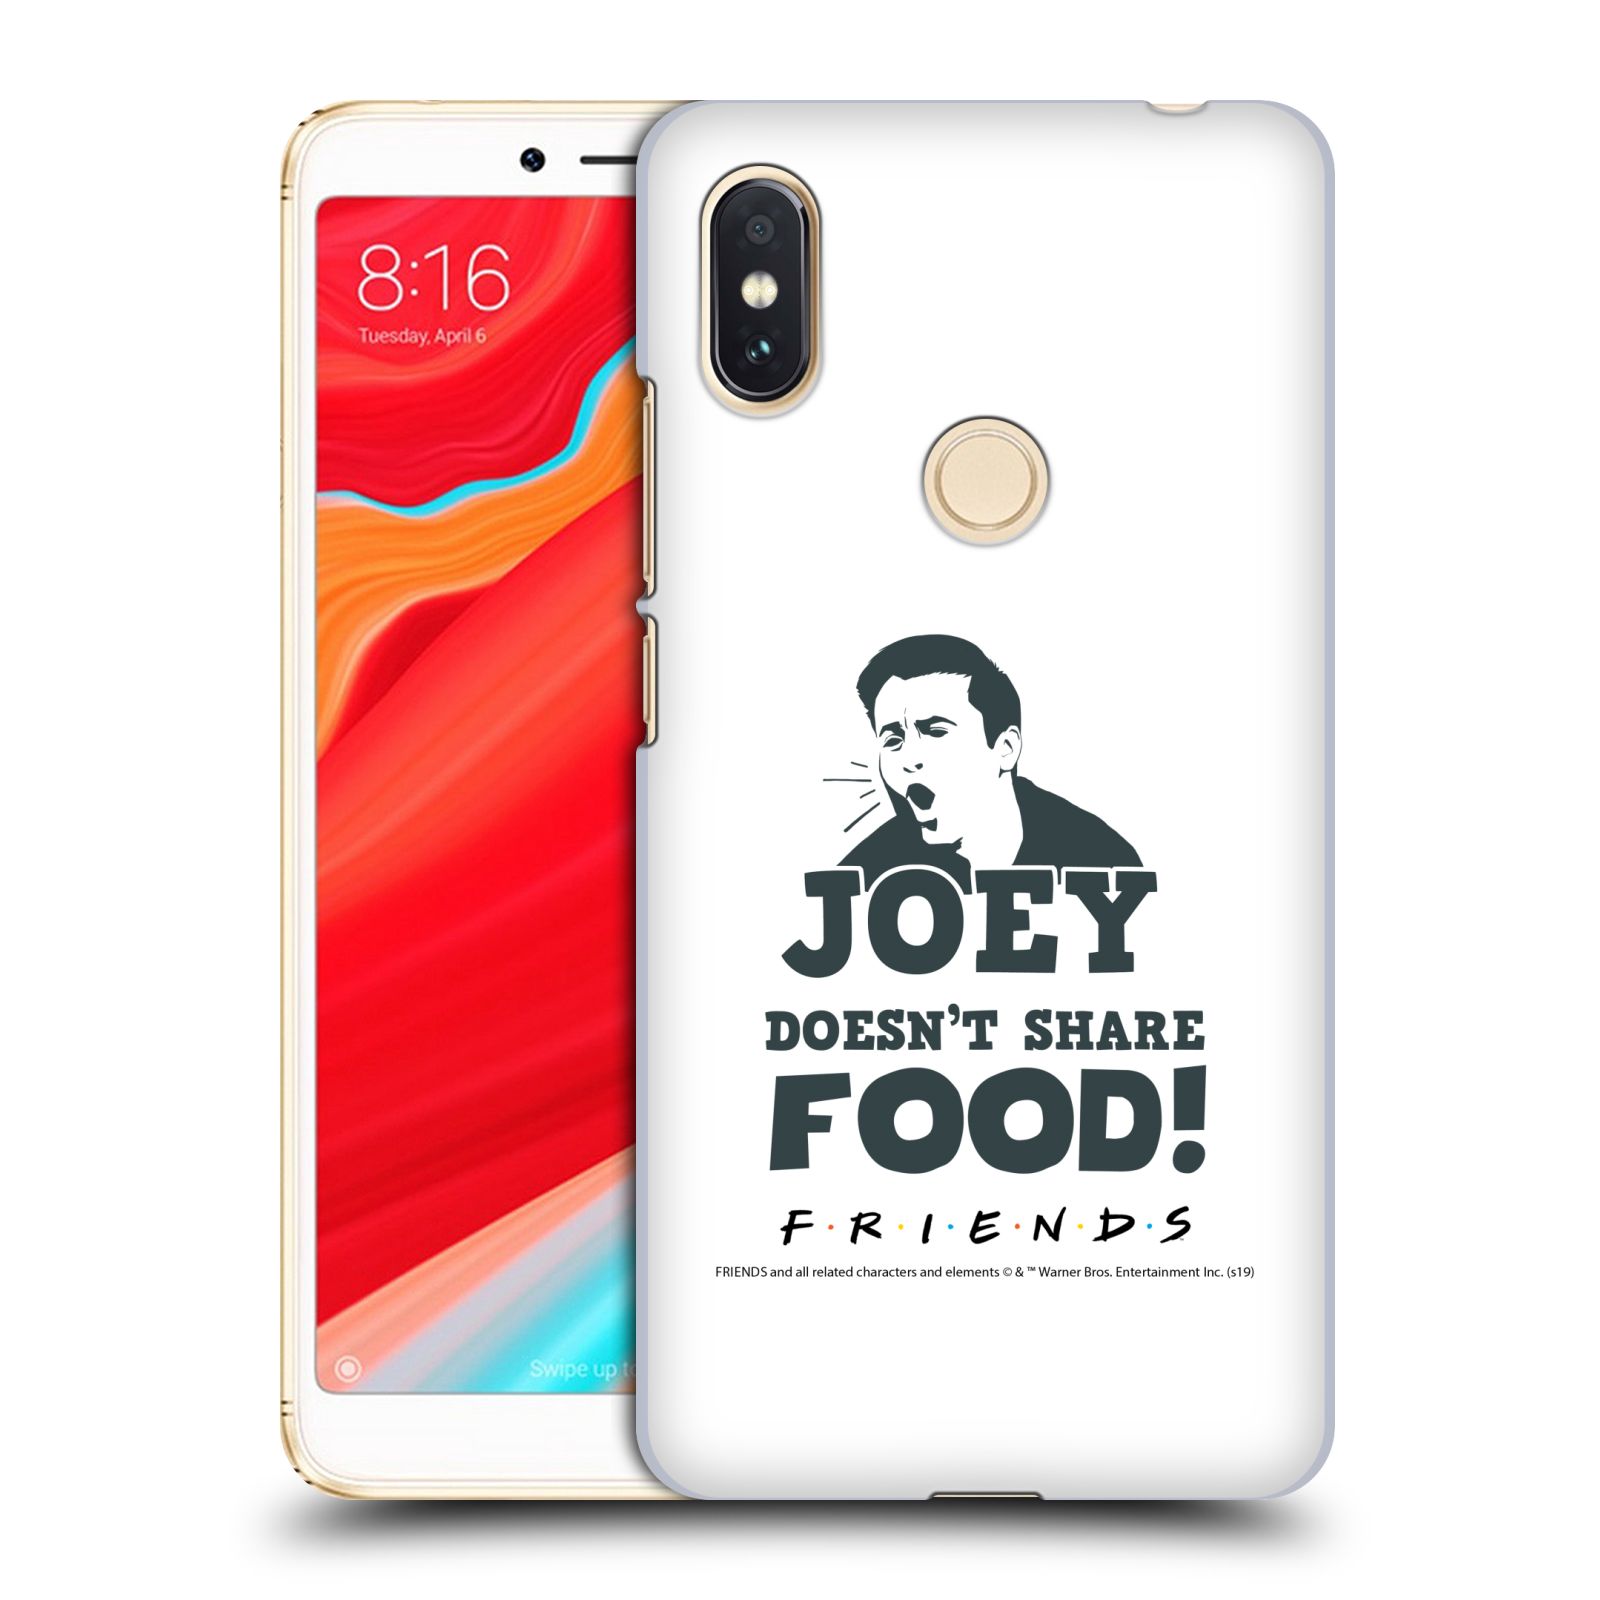 Pouzdro na mobil Xiaomi Redmi S2 - HEAD CASE - Seriál Přátelé - Joey se o jídlo nedělí